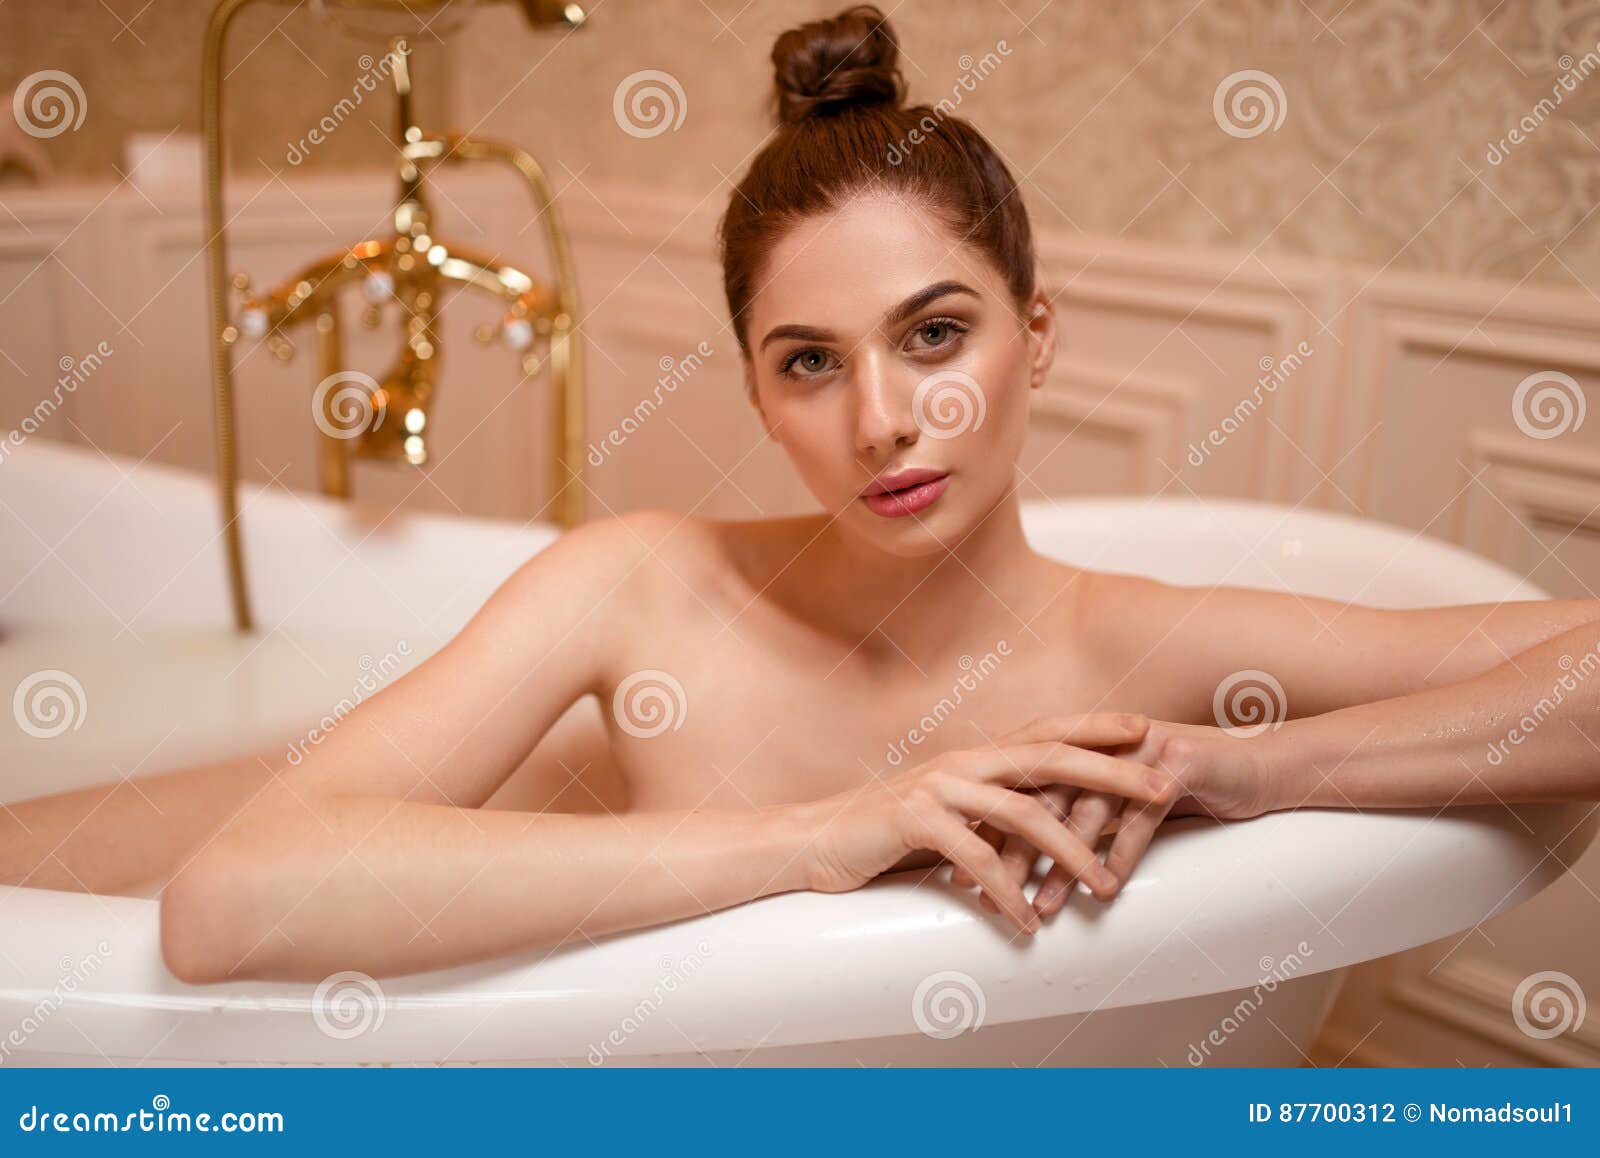 In badewanne frauen nackte Versaute Hausfrau